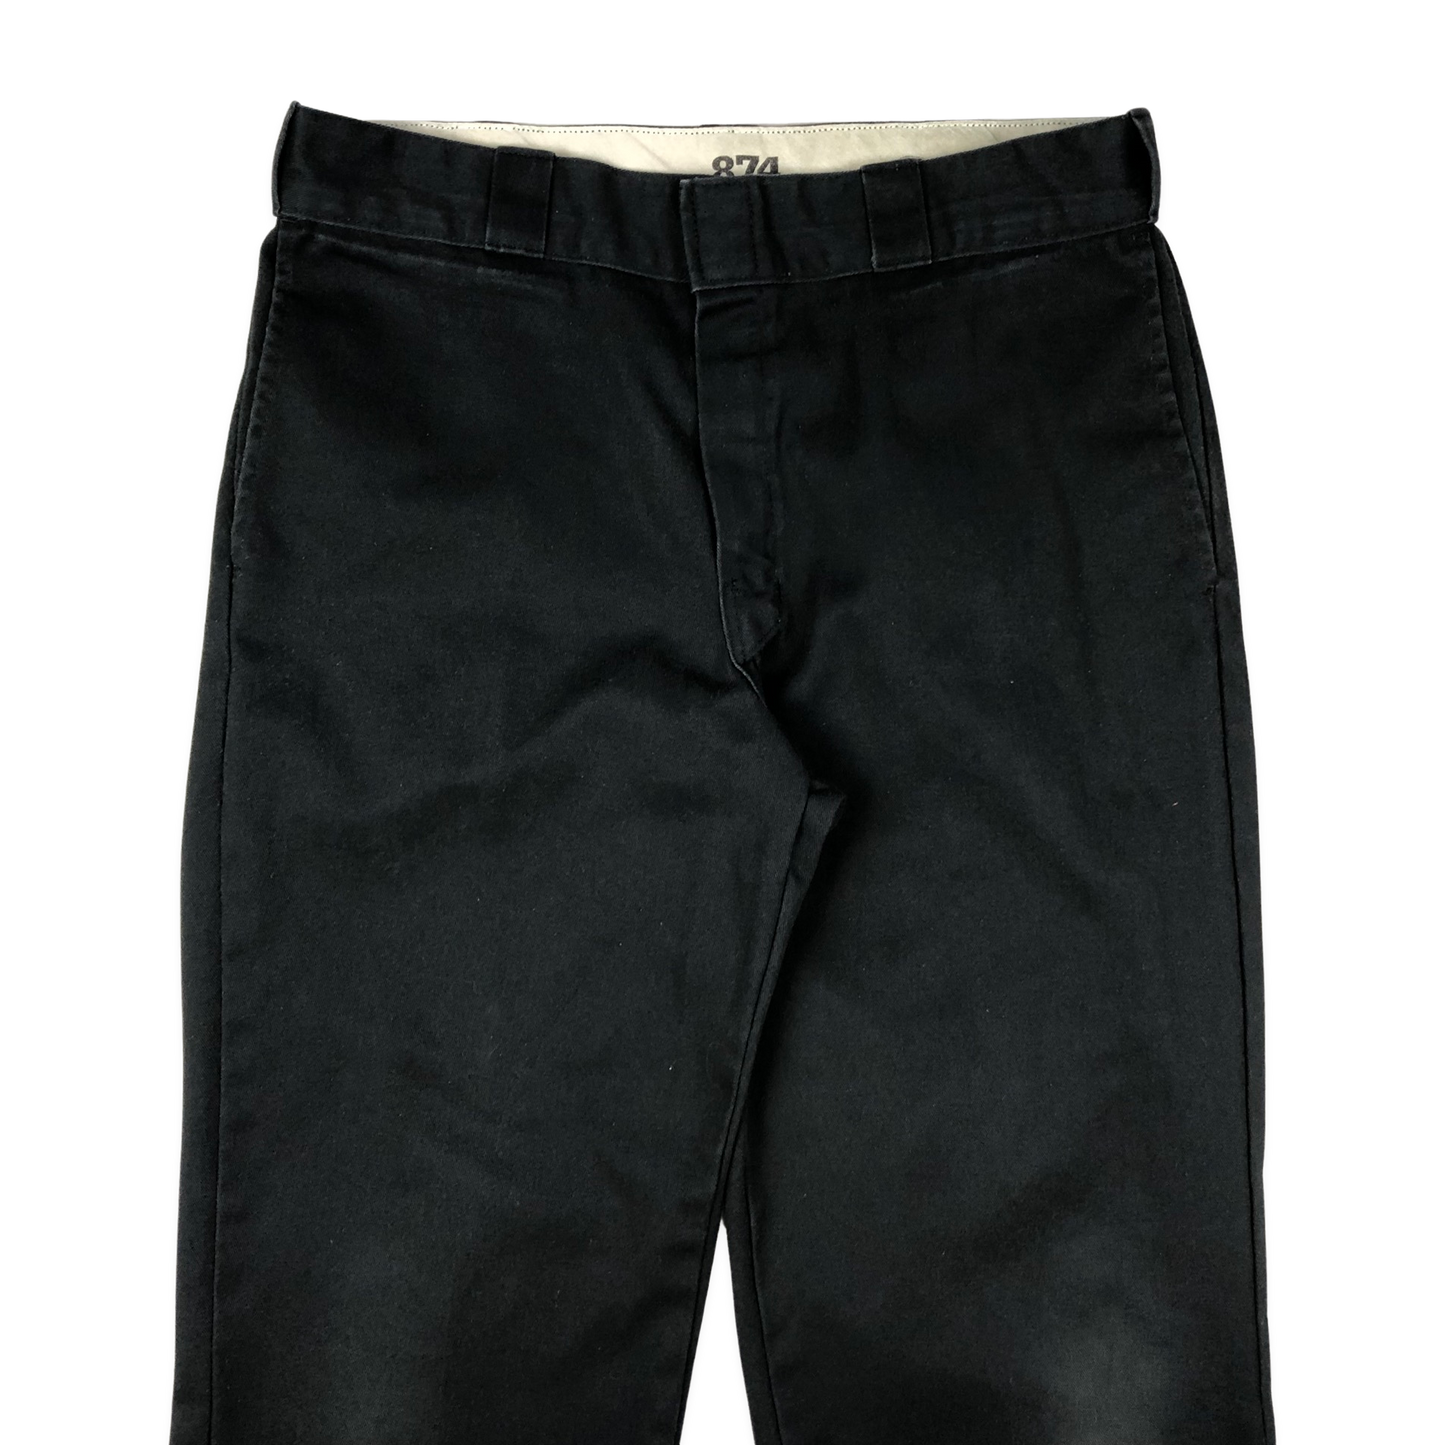 Vintage Dickies 874 Black Trousers 34W 30L